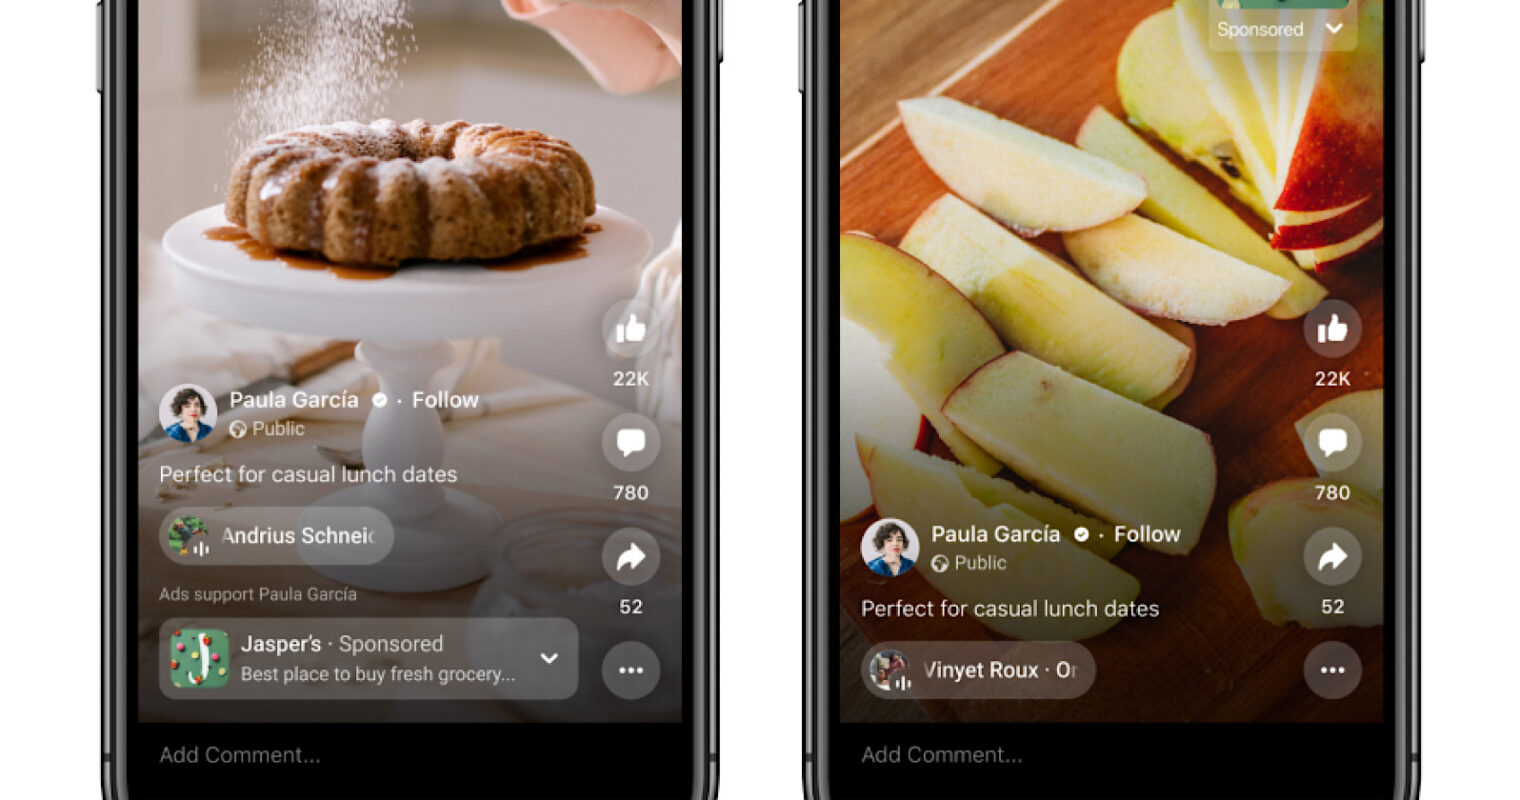 Deux images montrent une vue mobile d'une campagne Facebook présentant des photos d'aliments.